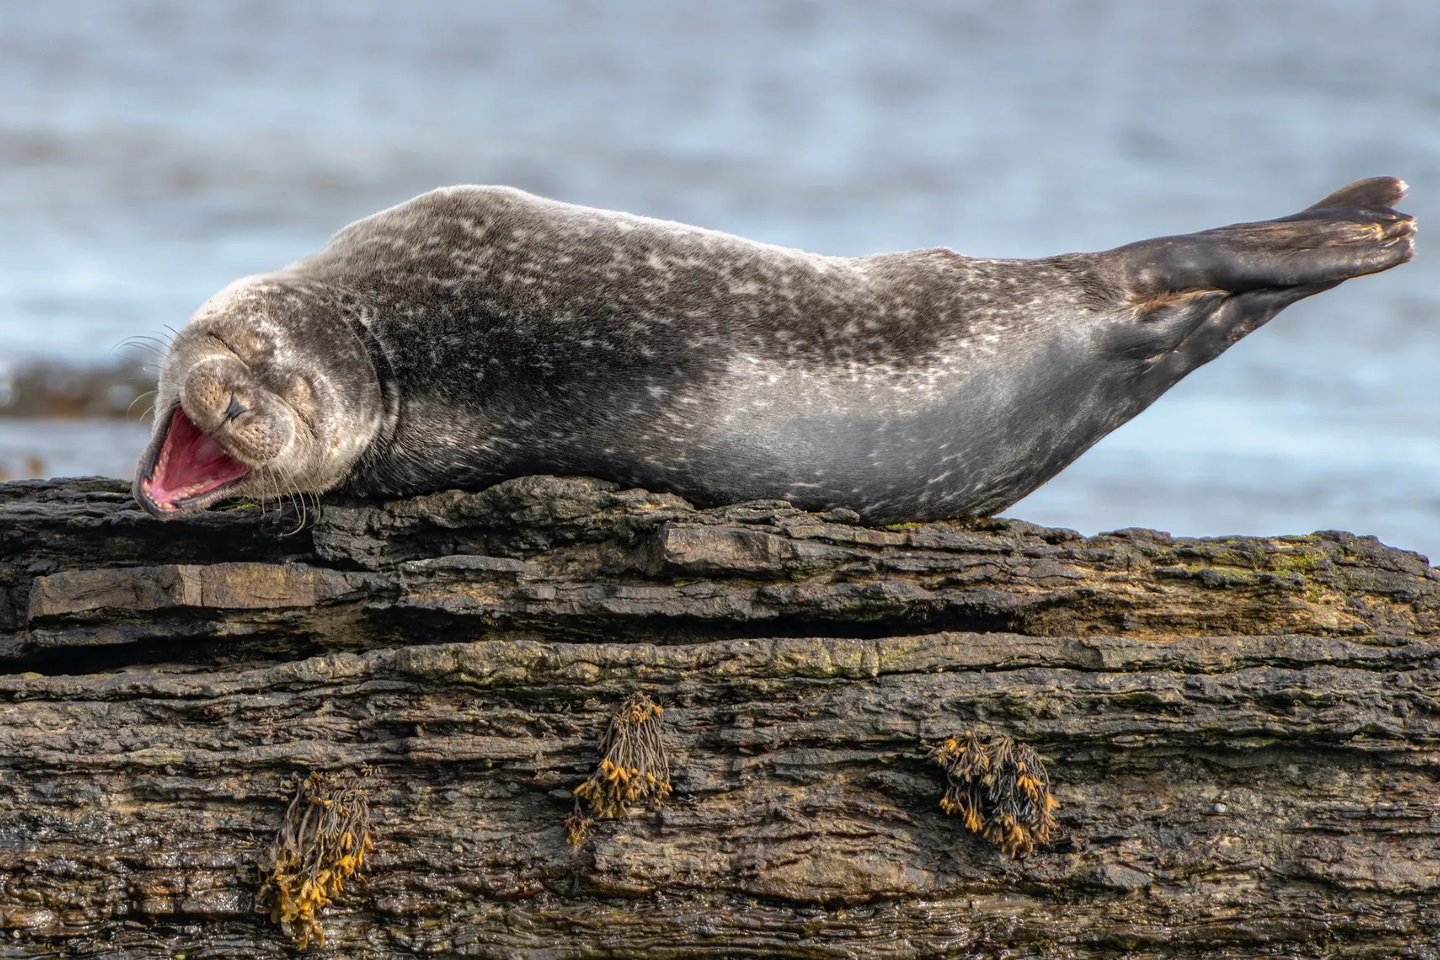 Смеясь, Шотландия.
«Молодой тюлень отдыхает на скале. Похоже, тюлень наслаждается действительно хорошей шуткой, а на самом деле он зевает». Фото: Ken Crossan/CWPAs 2020